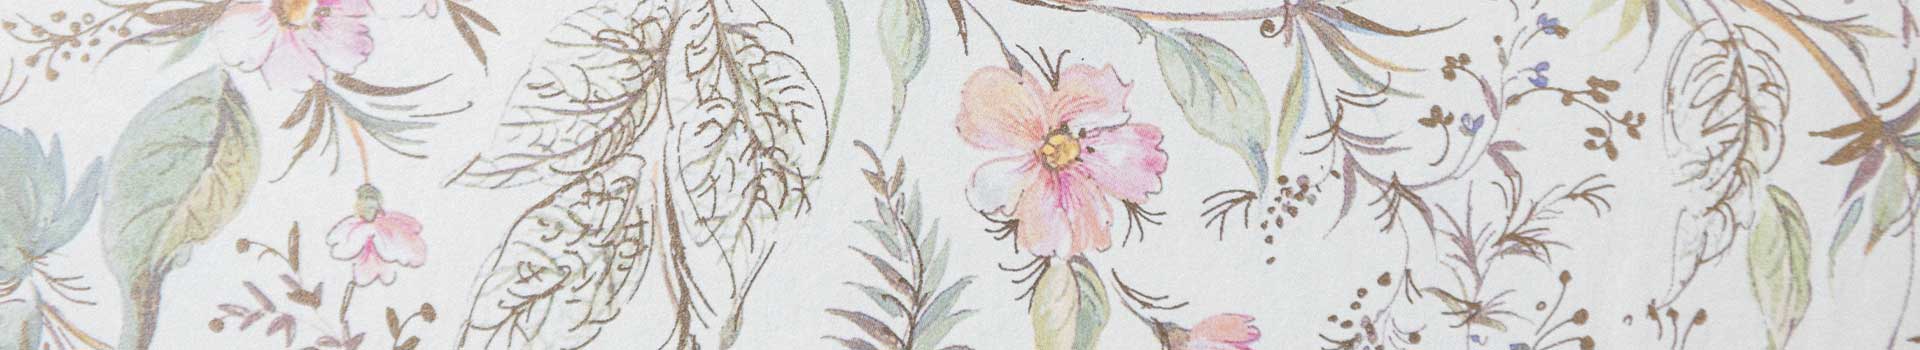 papel italiano de estampado floral con colores pastel para forrar cajas decorativas by Agnes Bloom